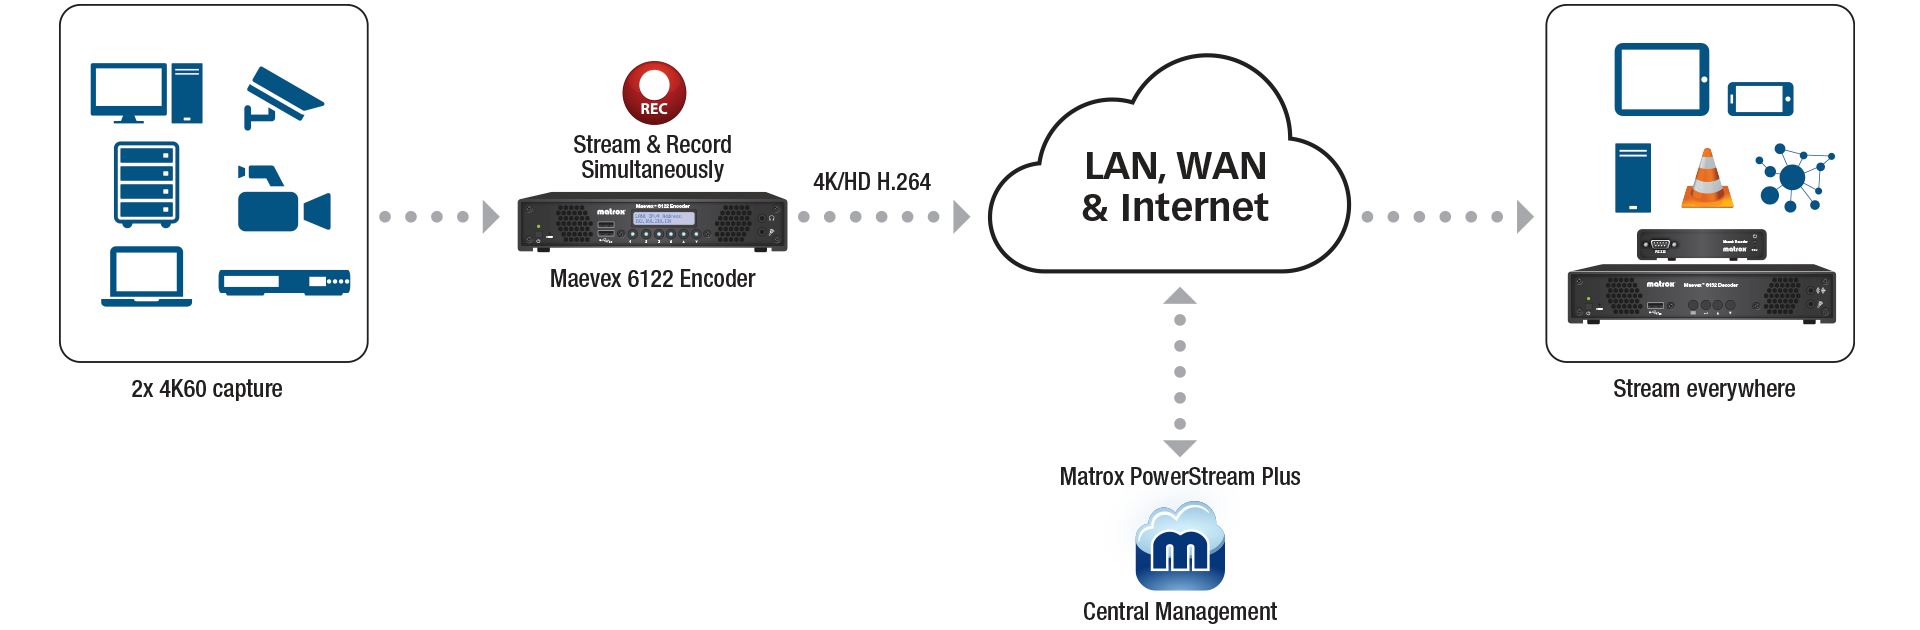 Wan Internet Workflow Maevex 6122